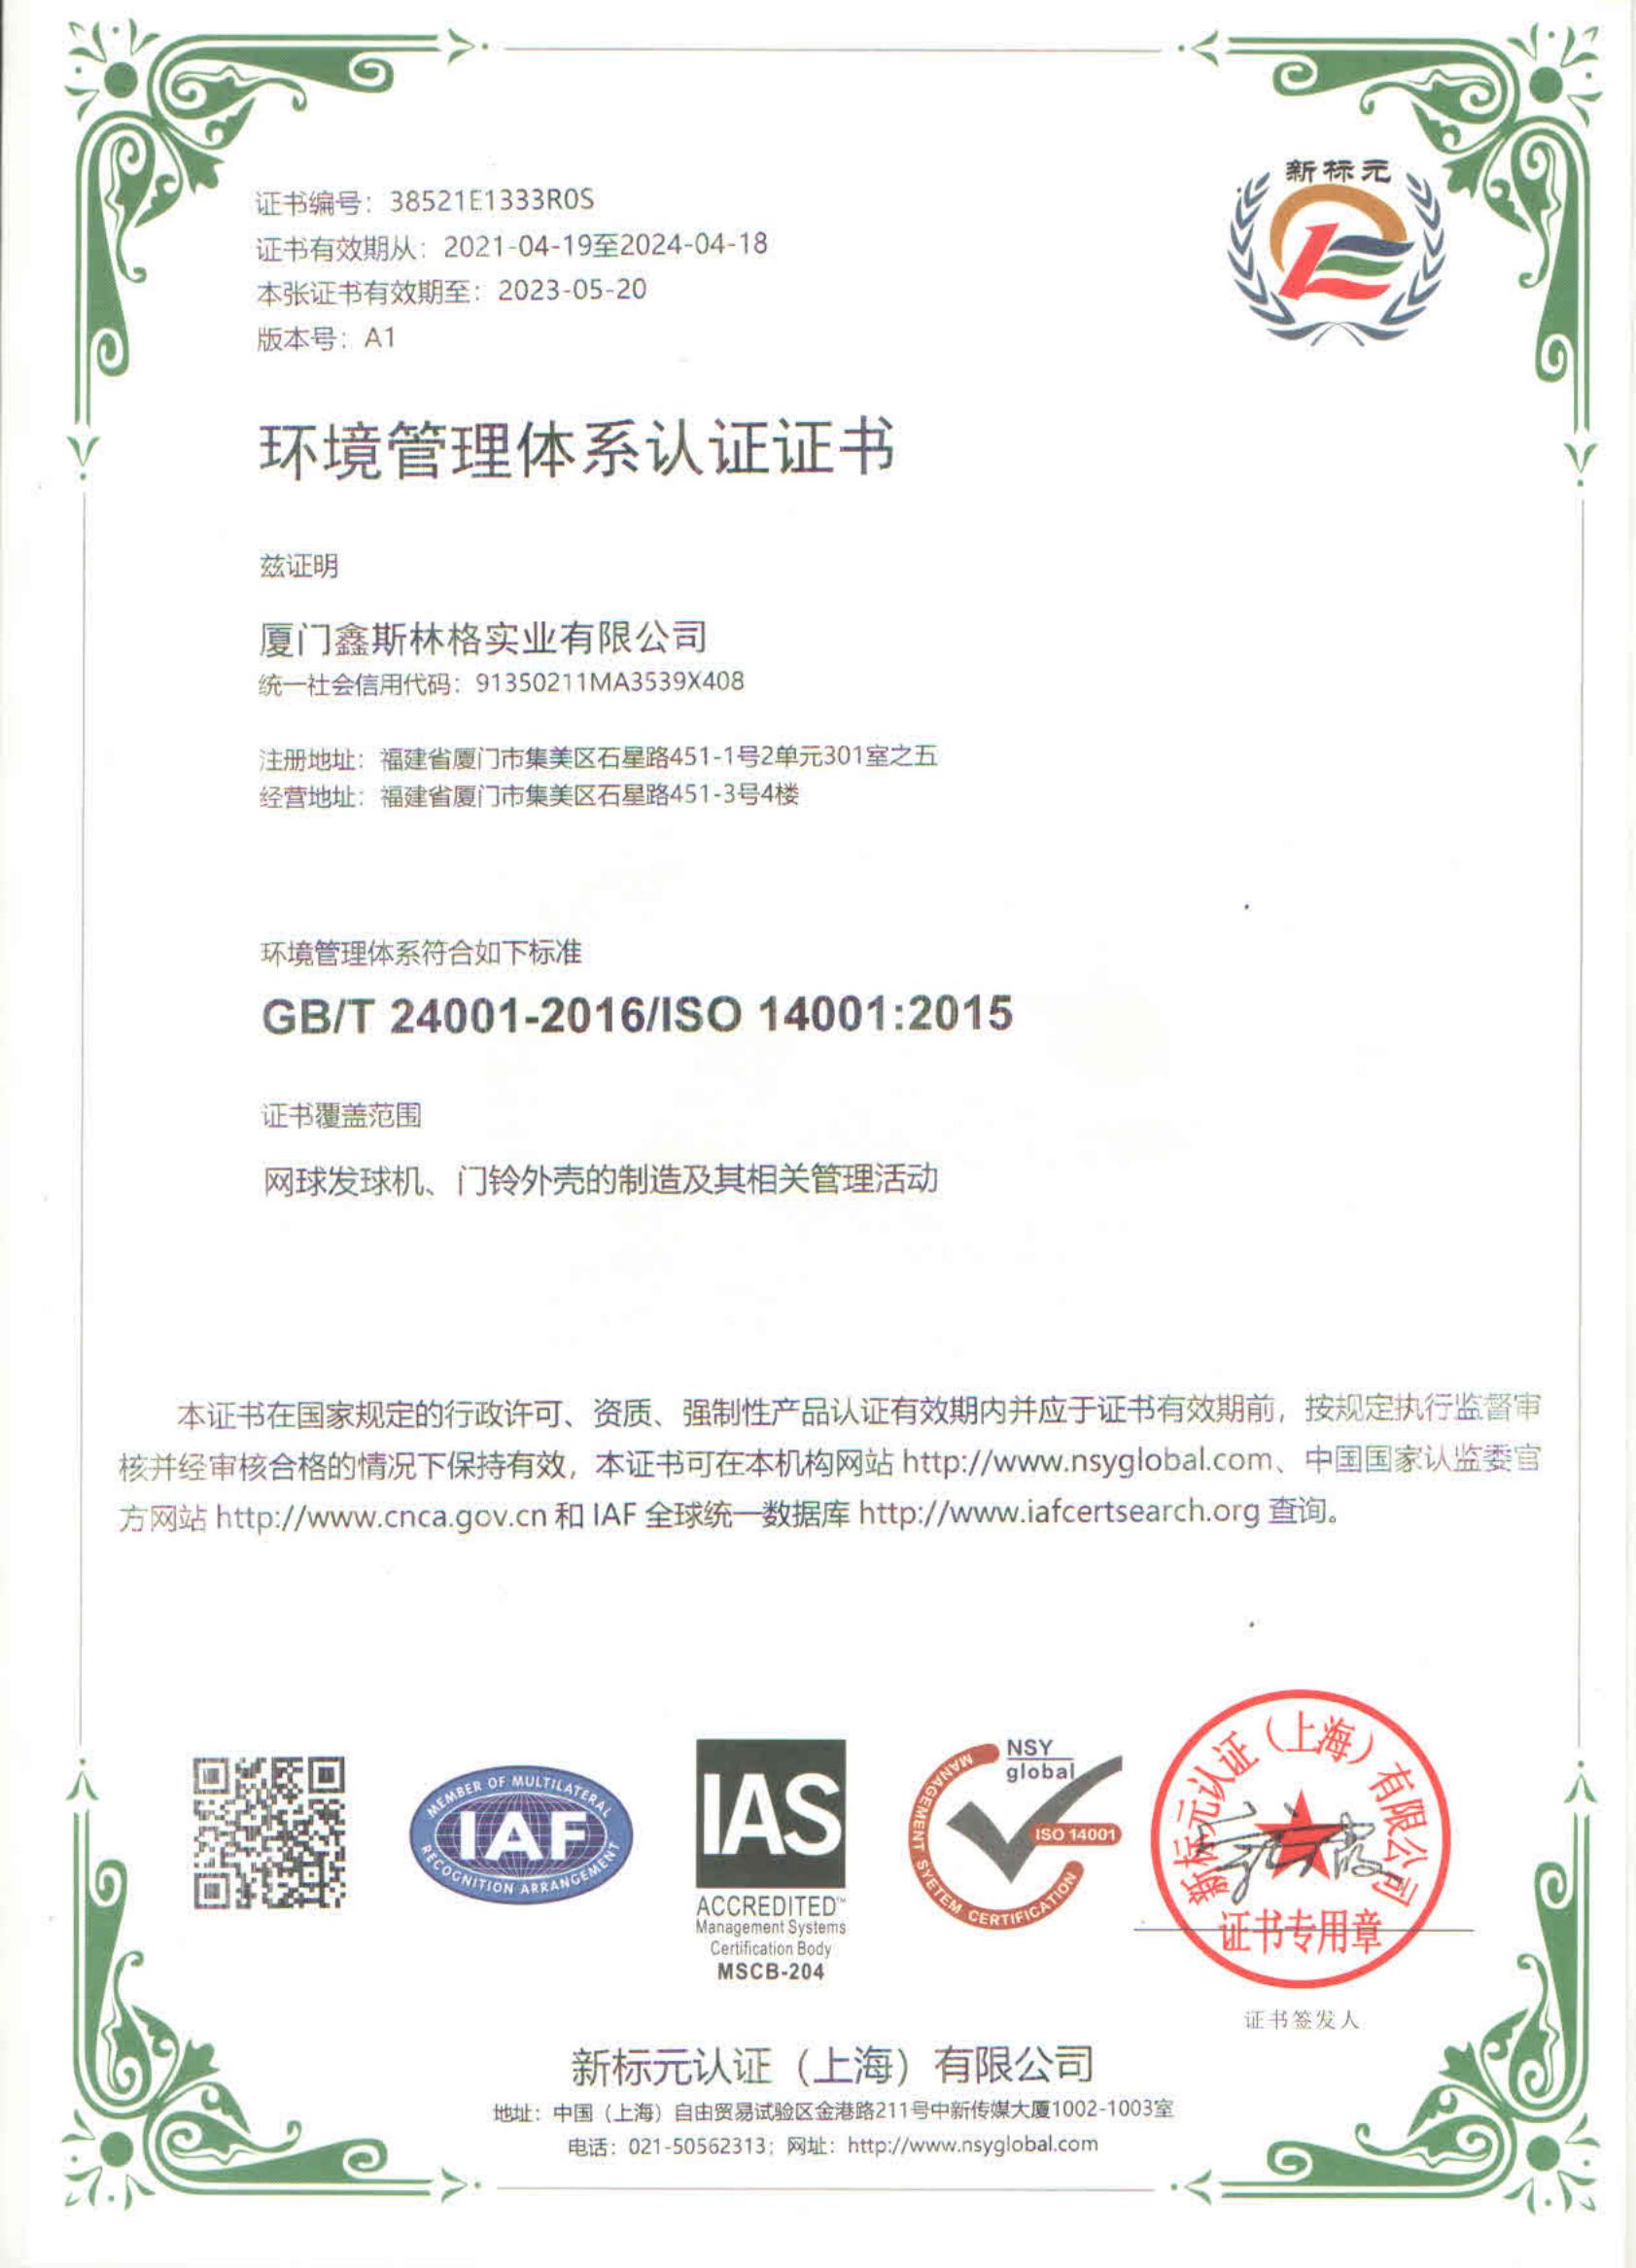 鑫斯林格--环境管理体系认证证书 ISO 14001 中英文_00